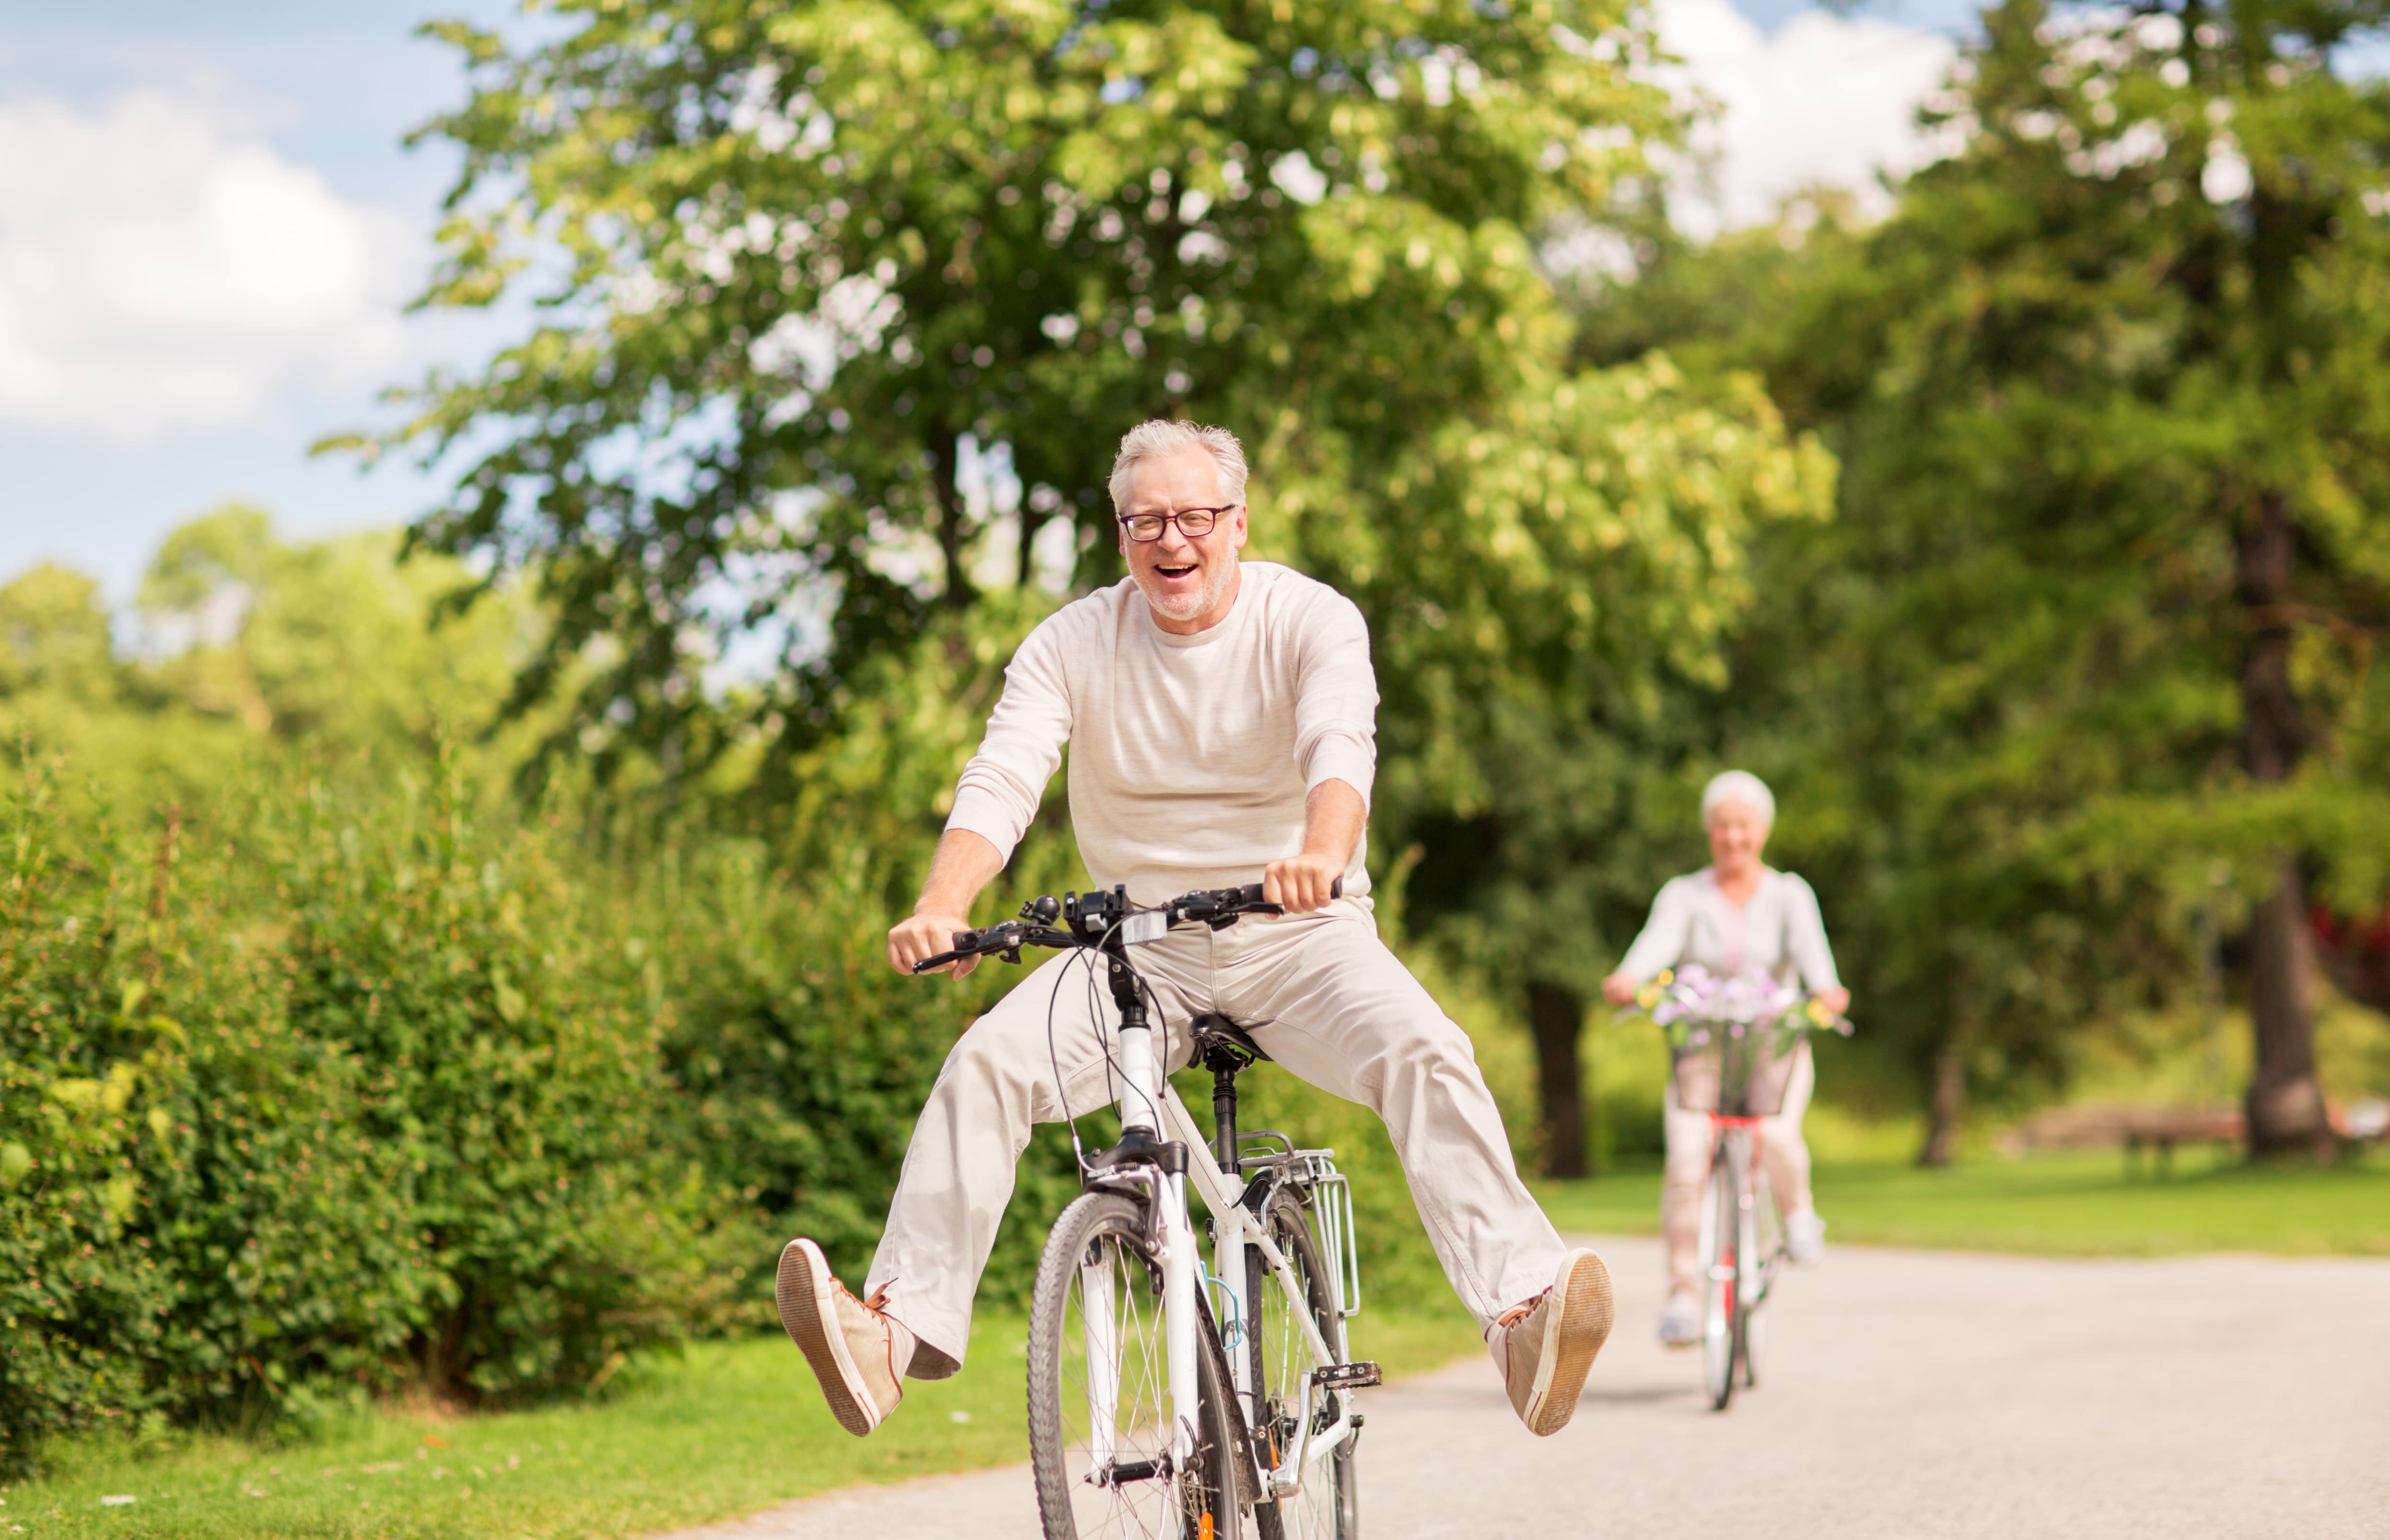 An older man joyfully riding a bike